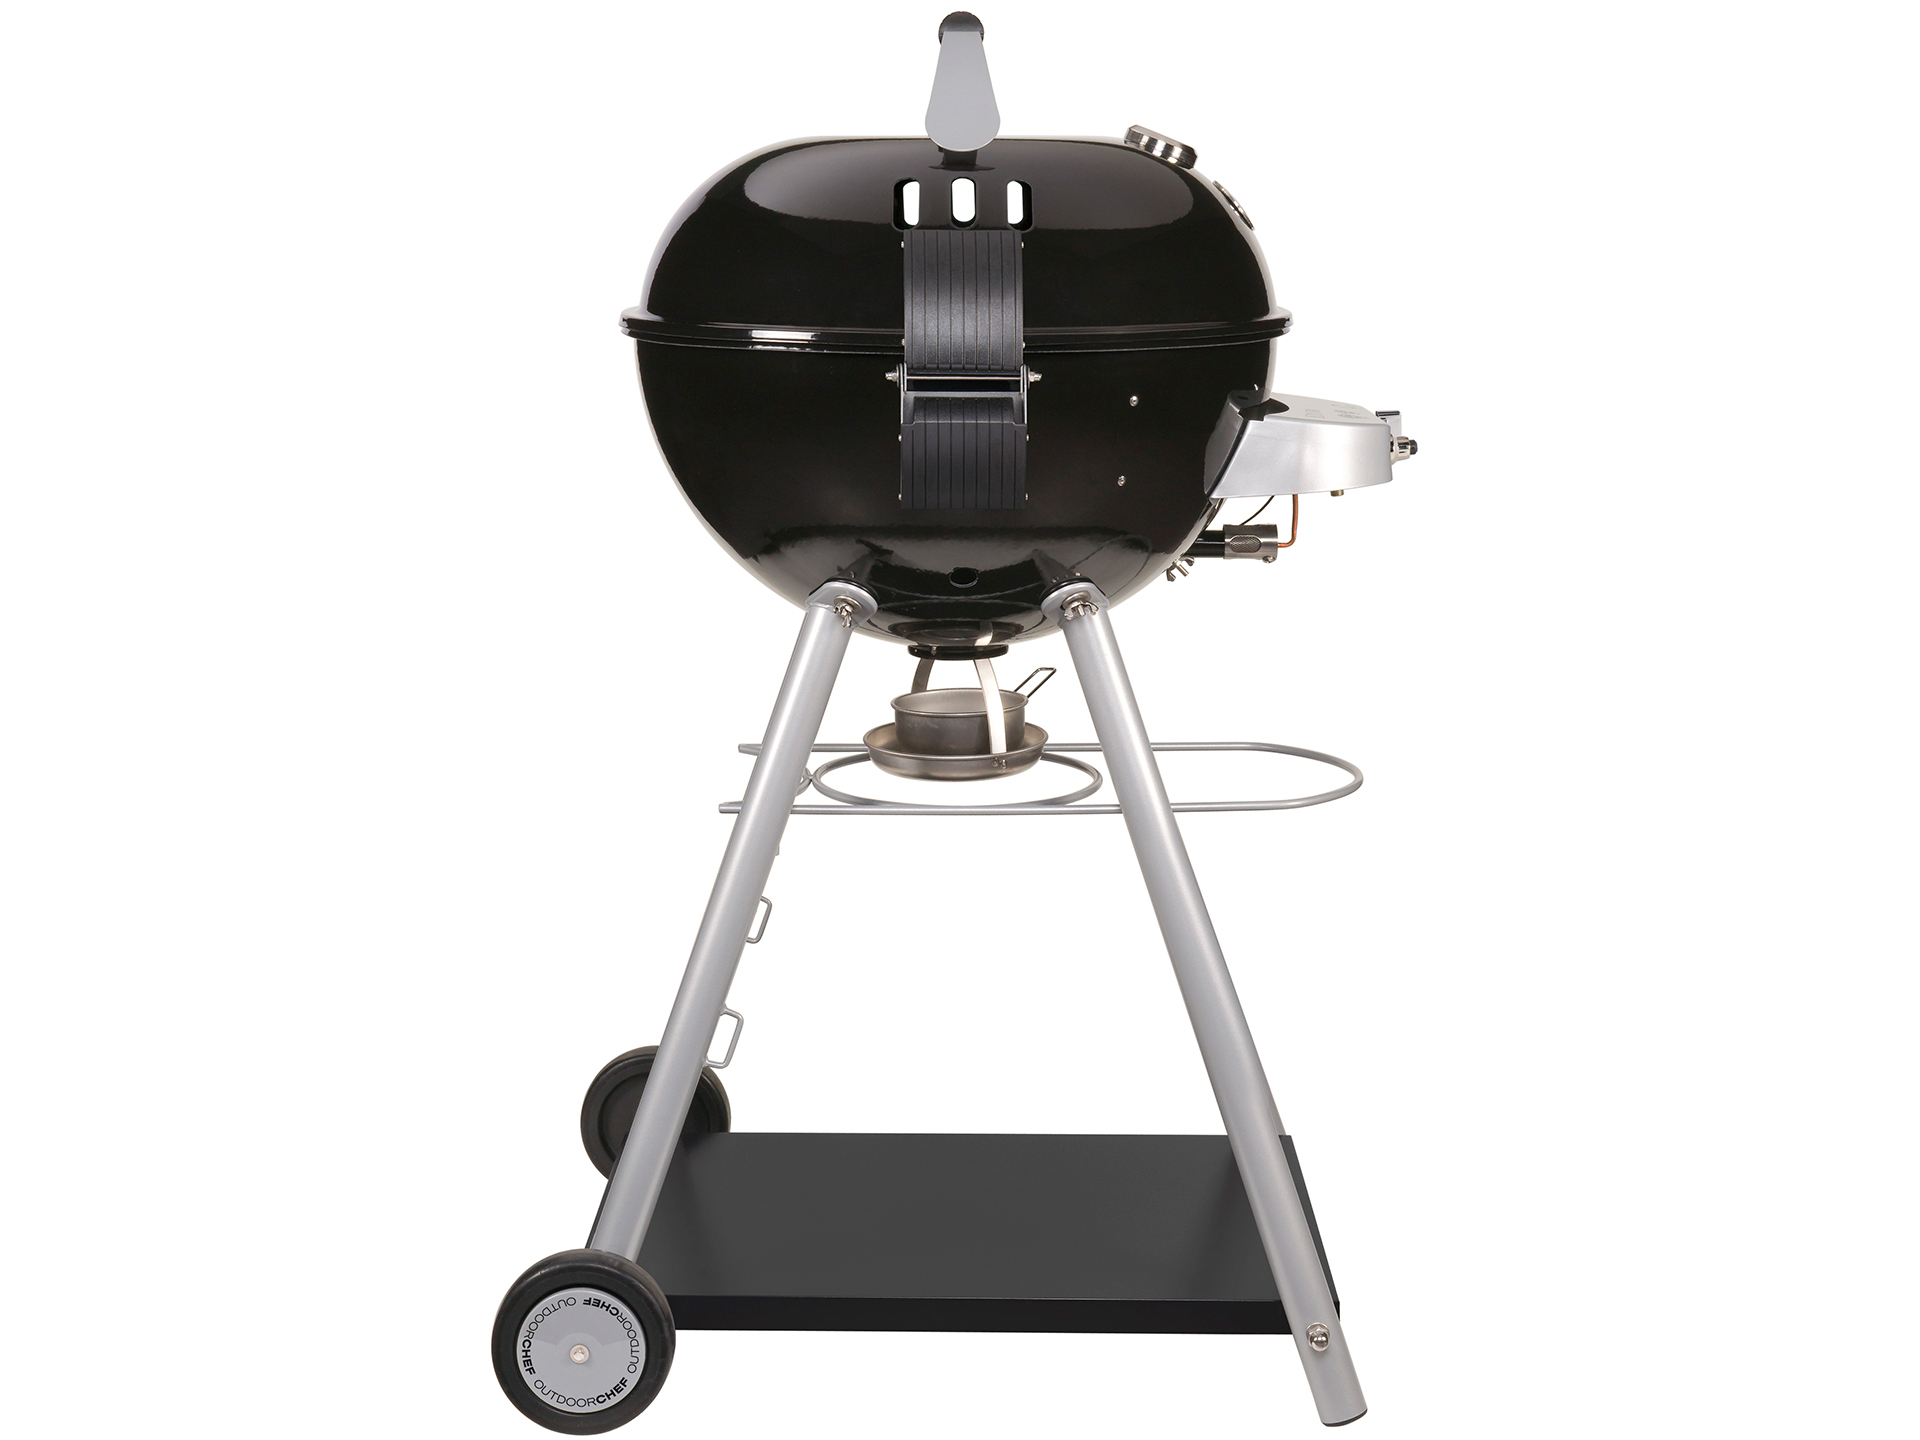 Outdoorchef // "Leon 570 G" barbecue - | SALE